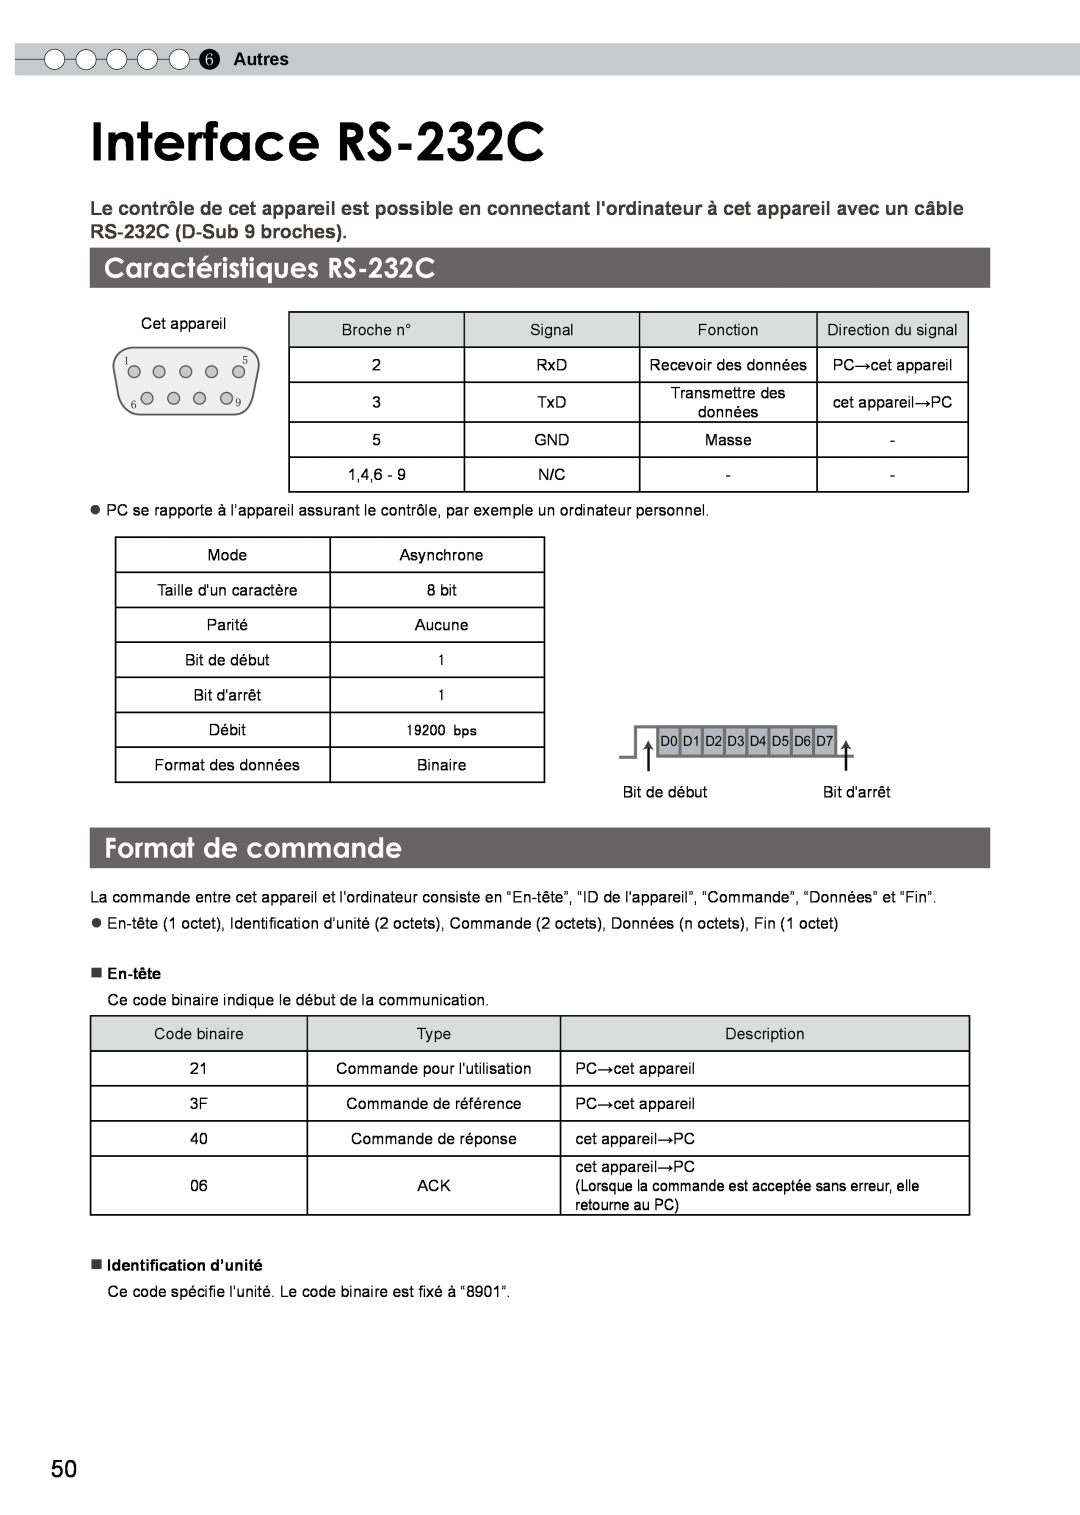 JVC DLA-HD350 manual Interface RS-232C, Caractéristiques RS-232C, Format de commande, Autres 